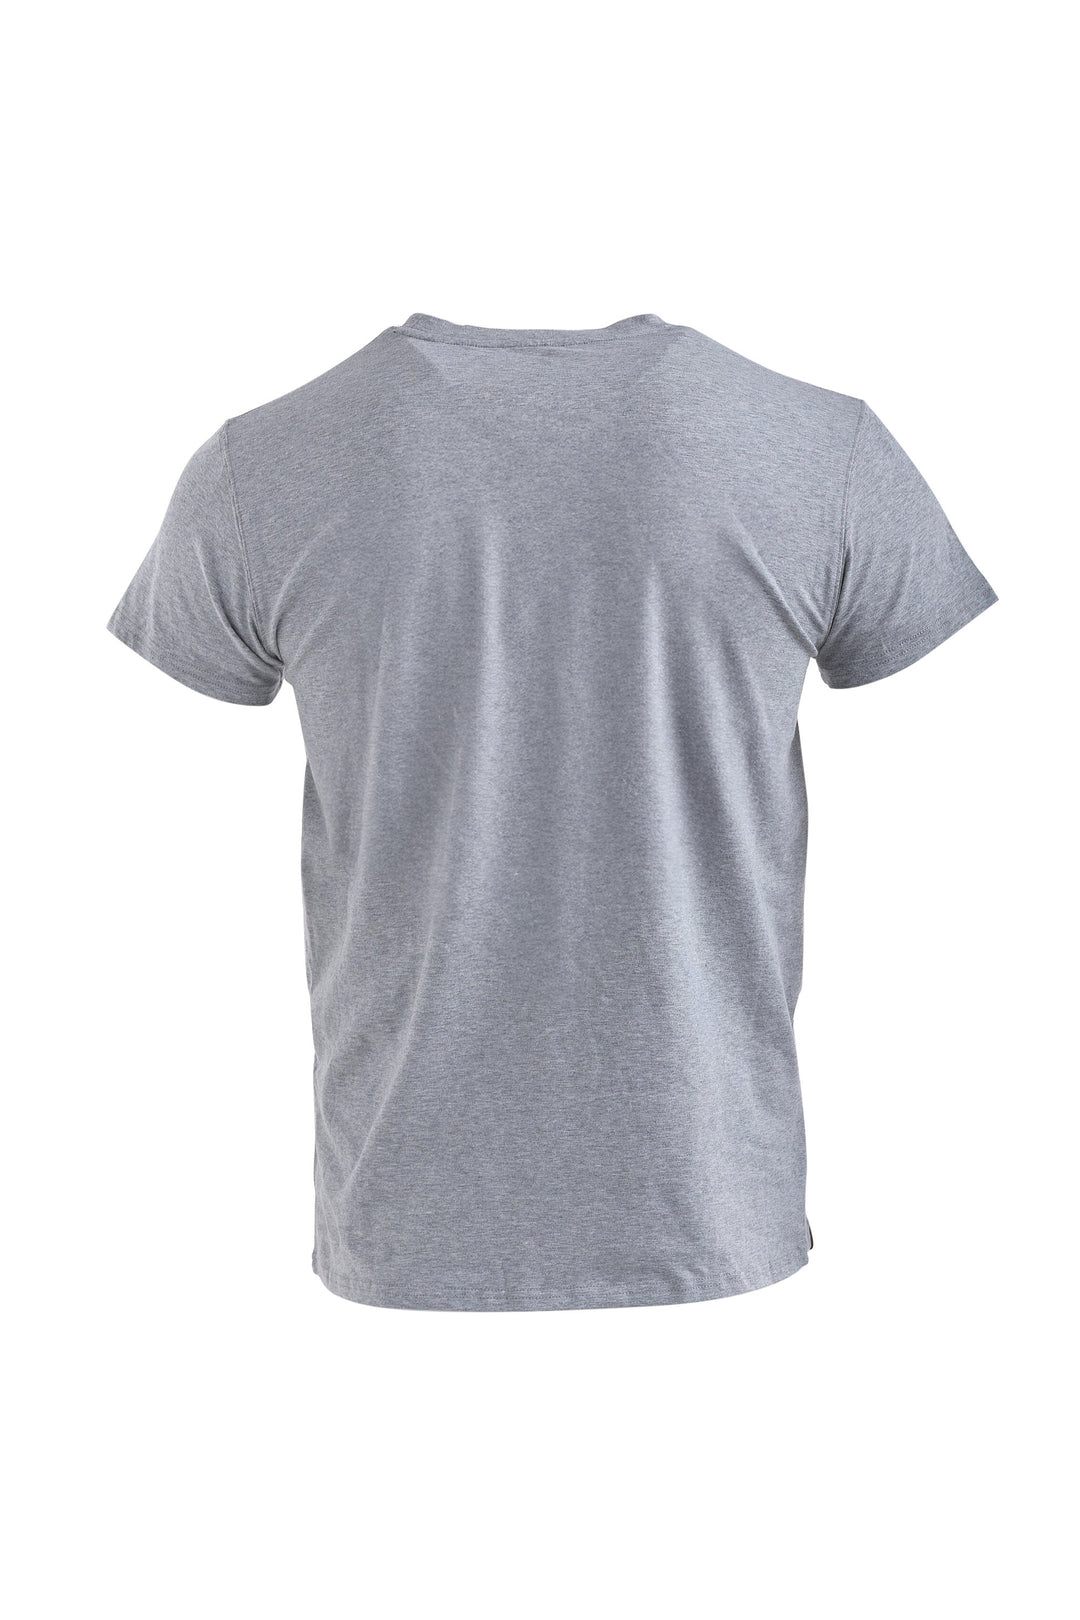 Cotton Short Sleeve Shirt [Man]